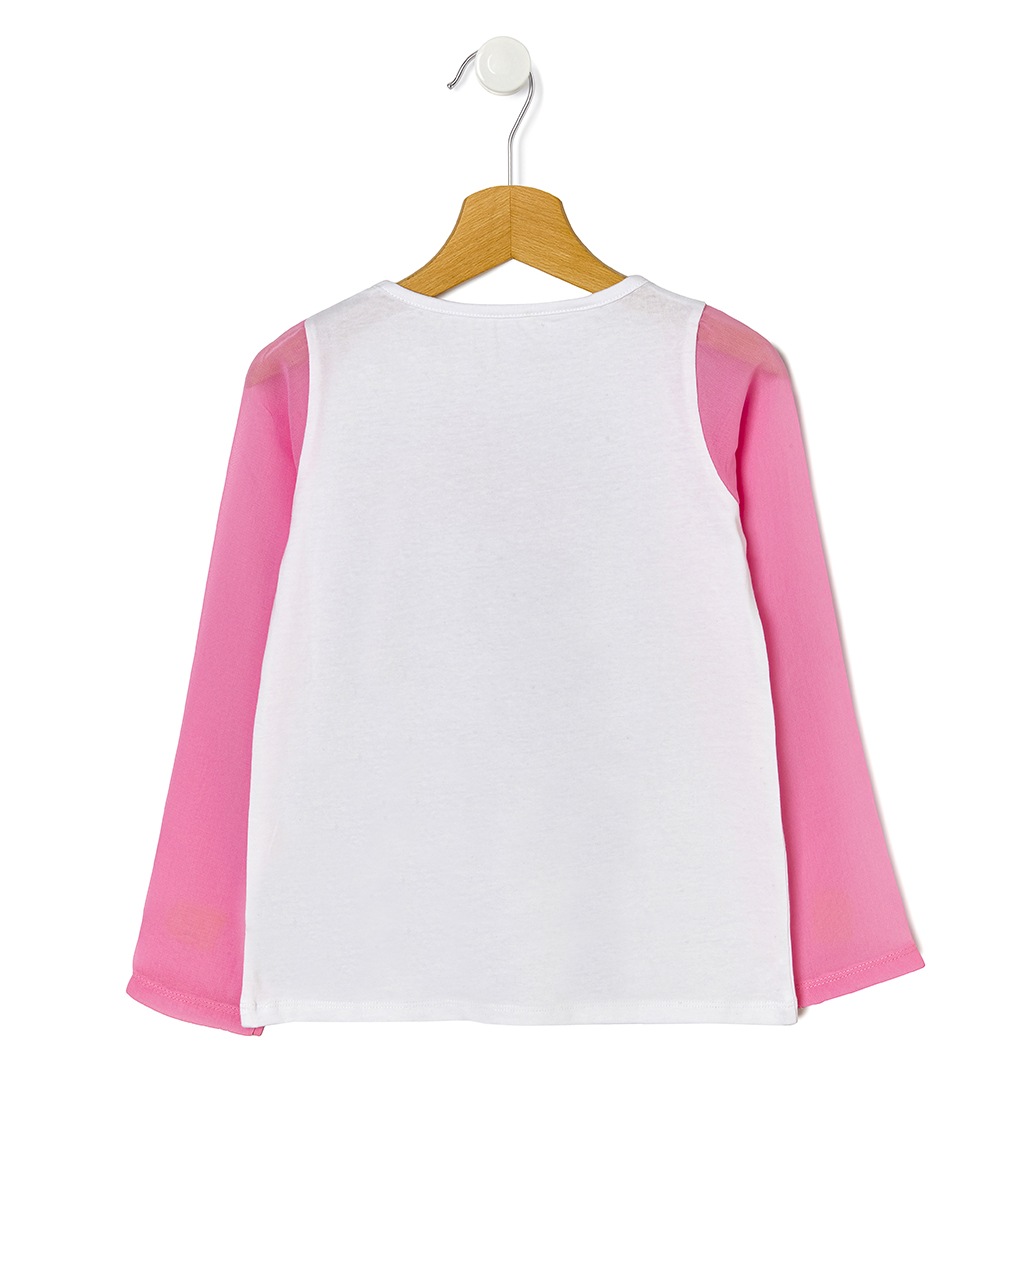 μπλούζα μακρυμάνικη με μανίκια από οργκάνζα ροζ μεγ.8-9/9-10 ετών για κορίτσι - Prénatal